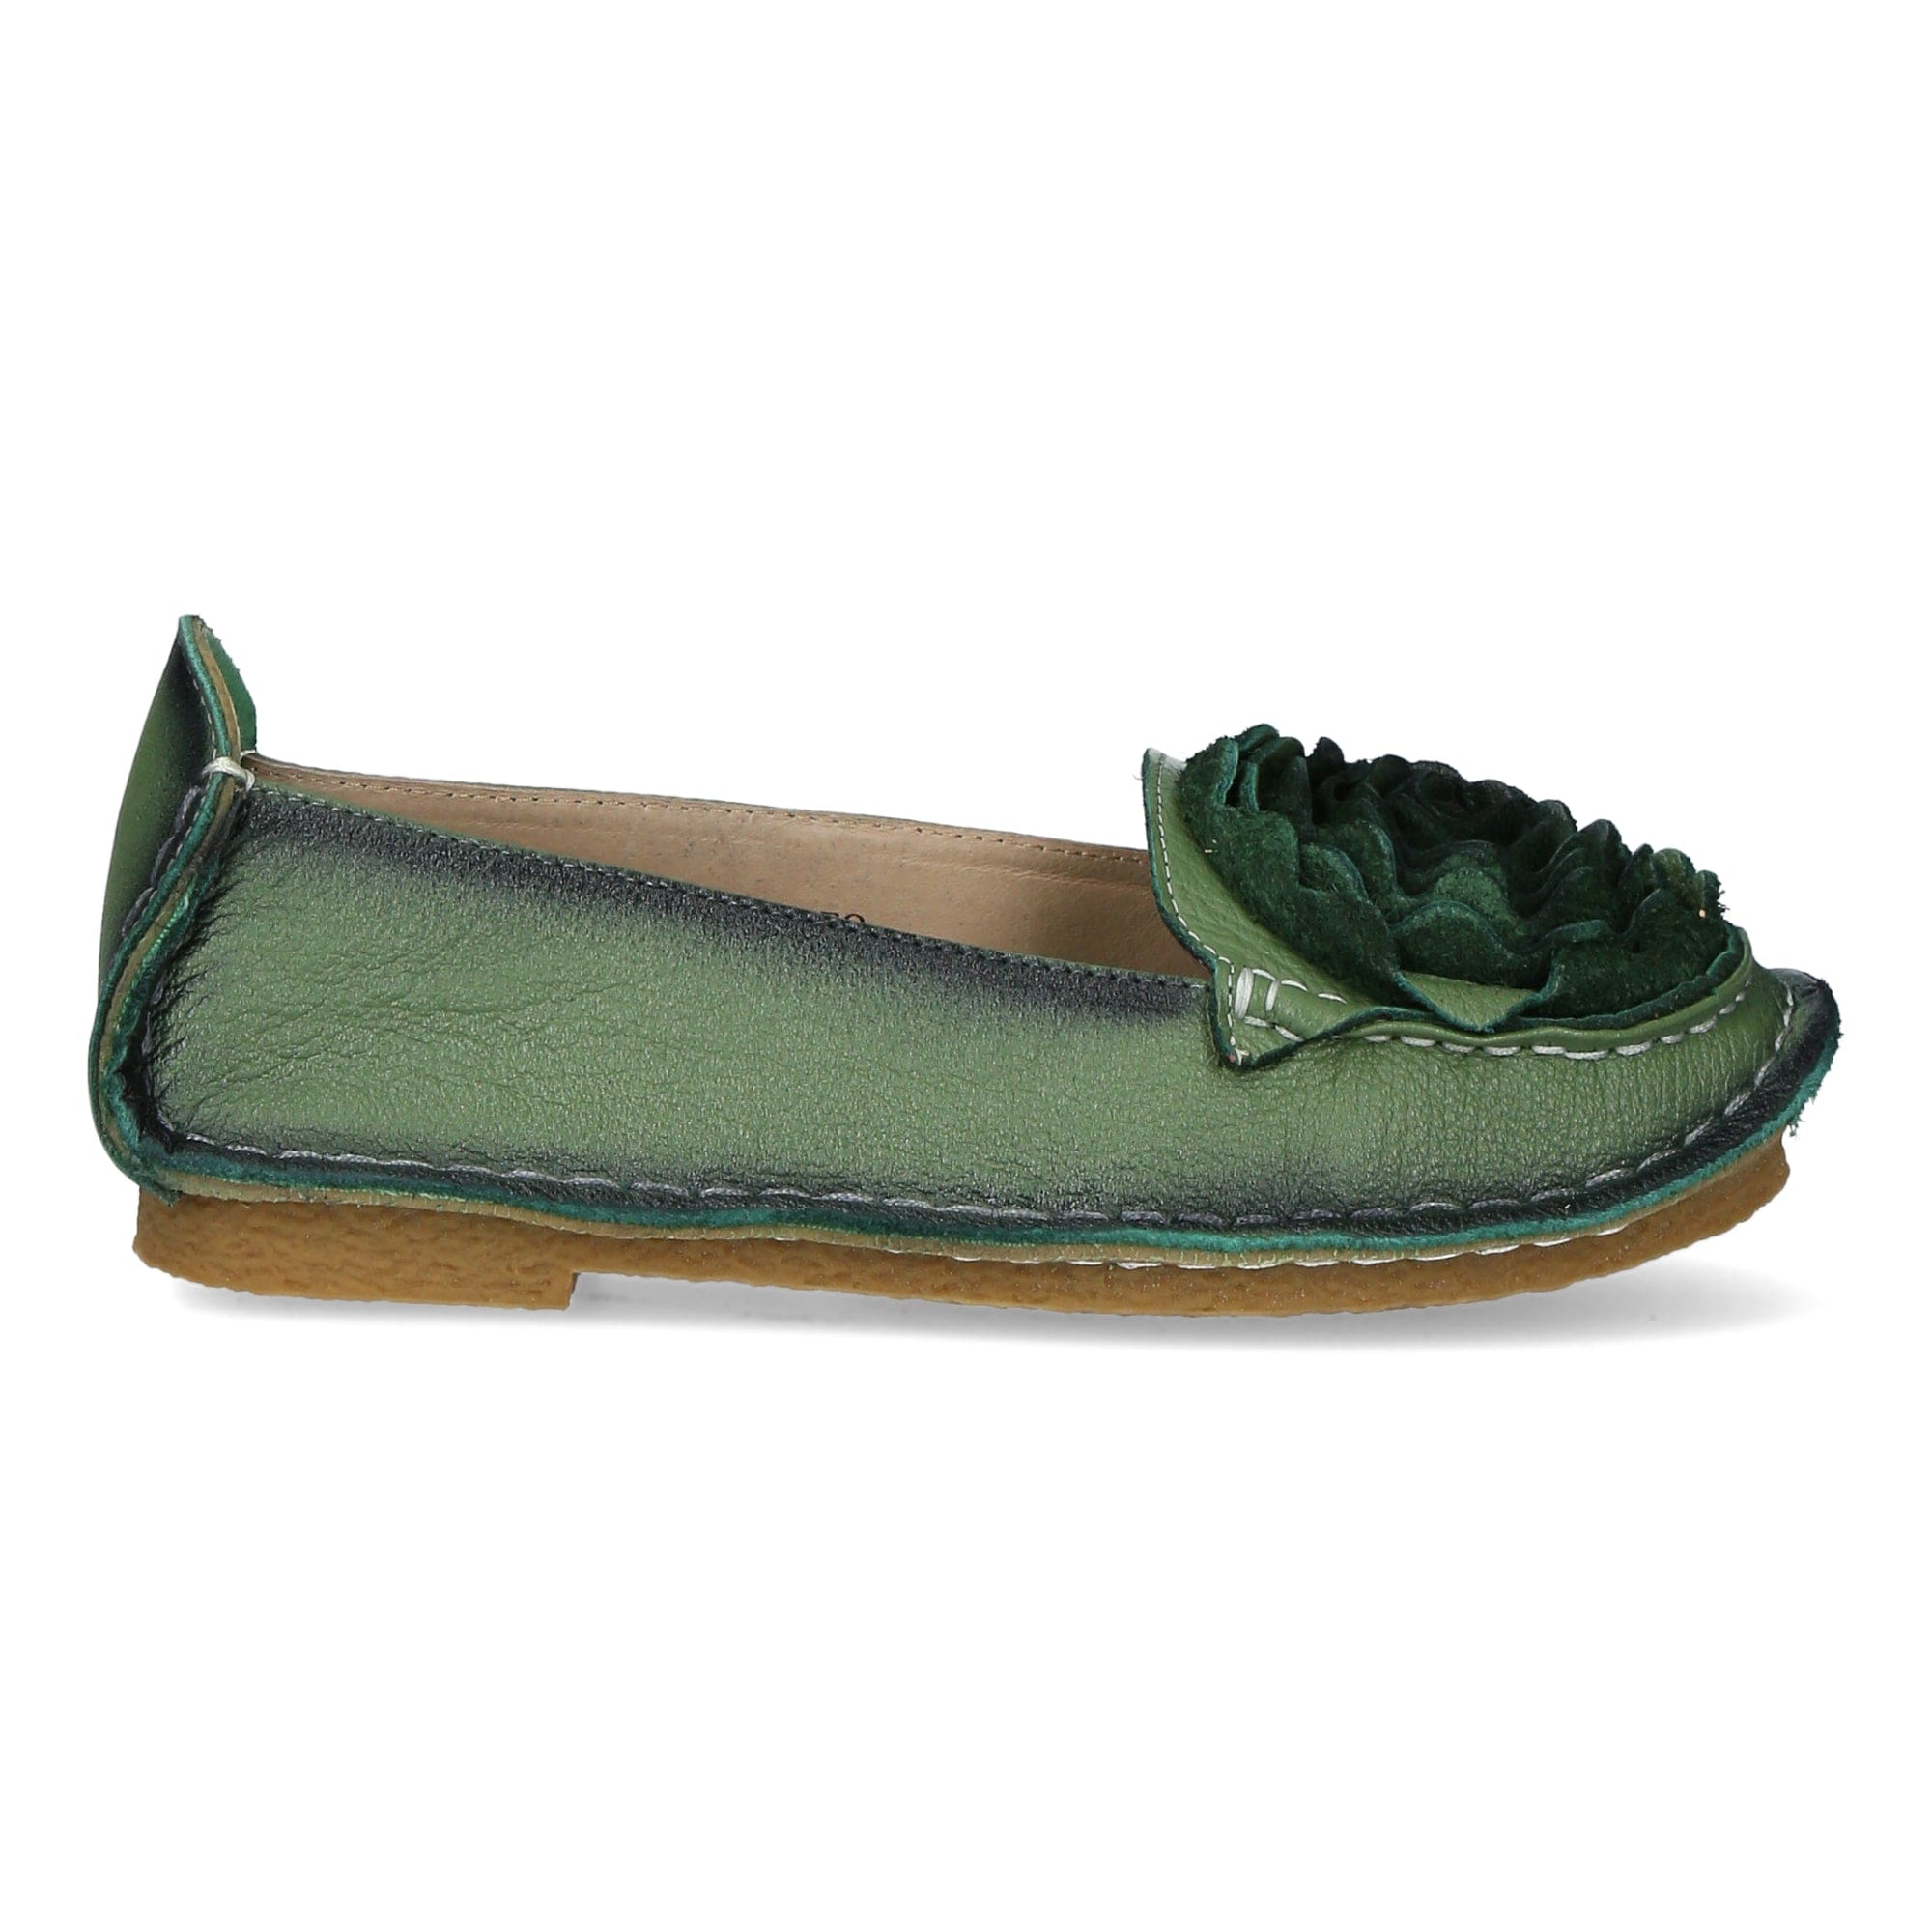 Chaussures Viviane - 35 / Vert - Mocassin